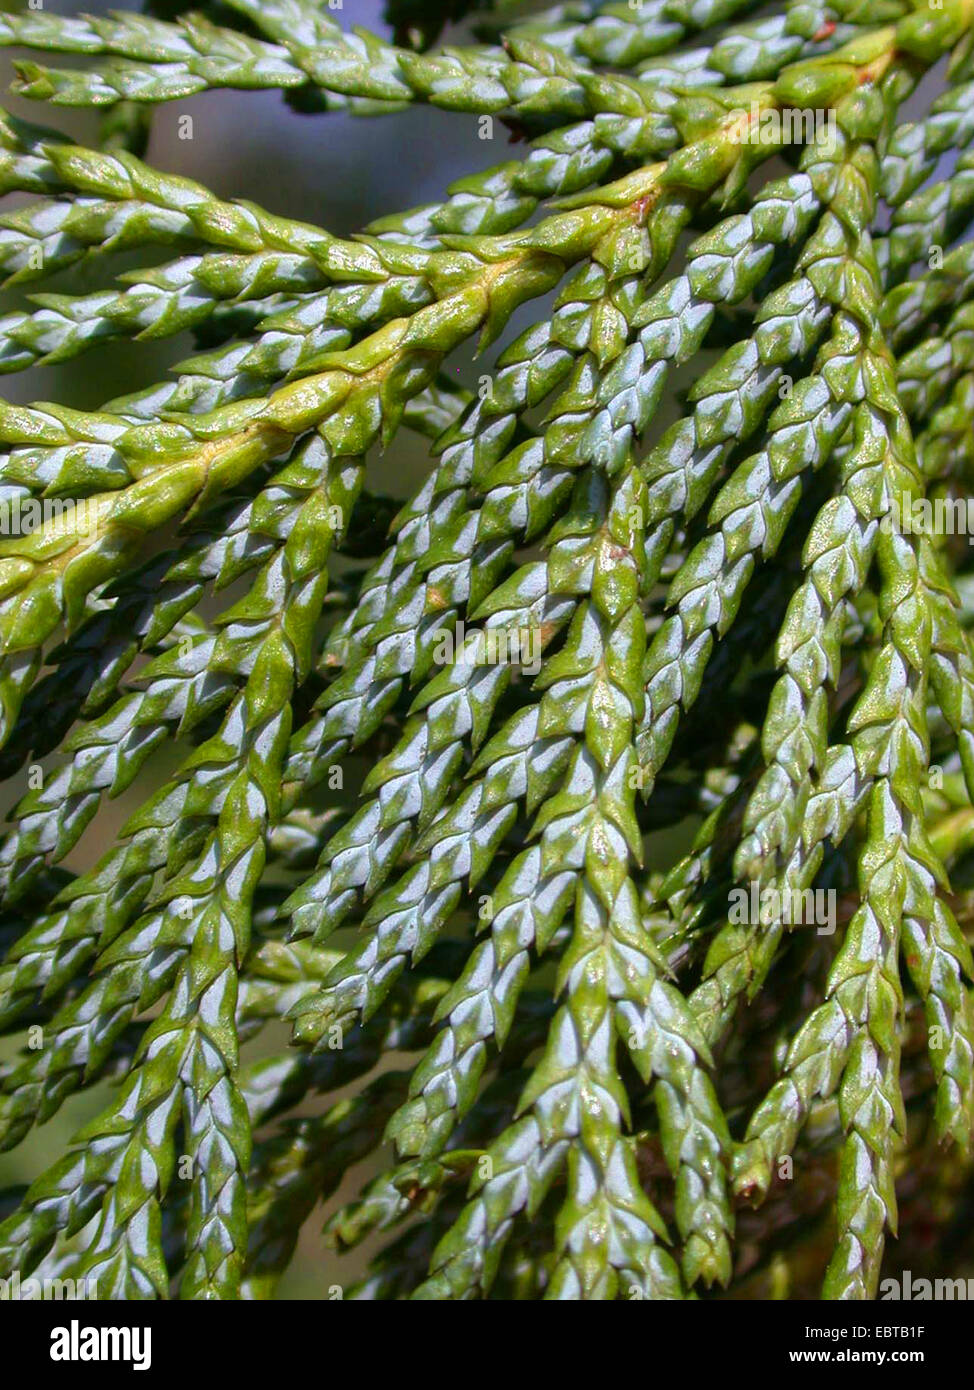 sawara falsecypress (Chamaecyparis pisifera), unserside of a branch Stock Photo